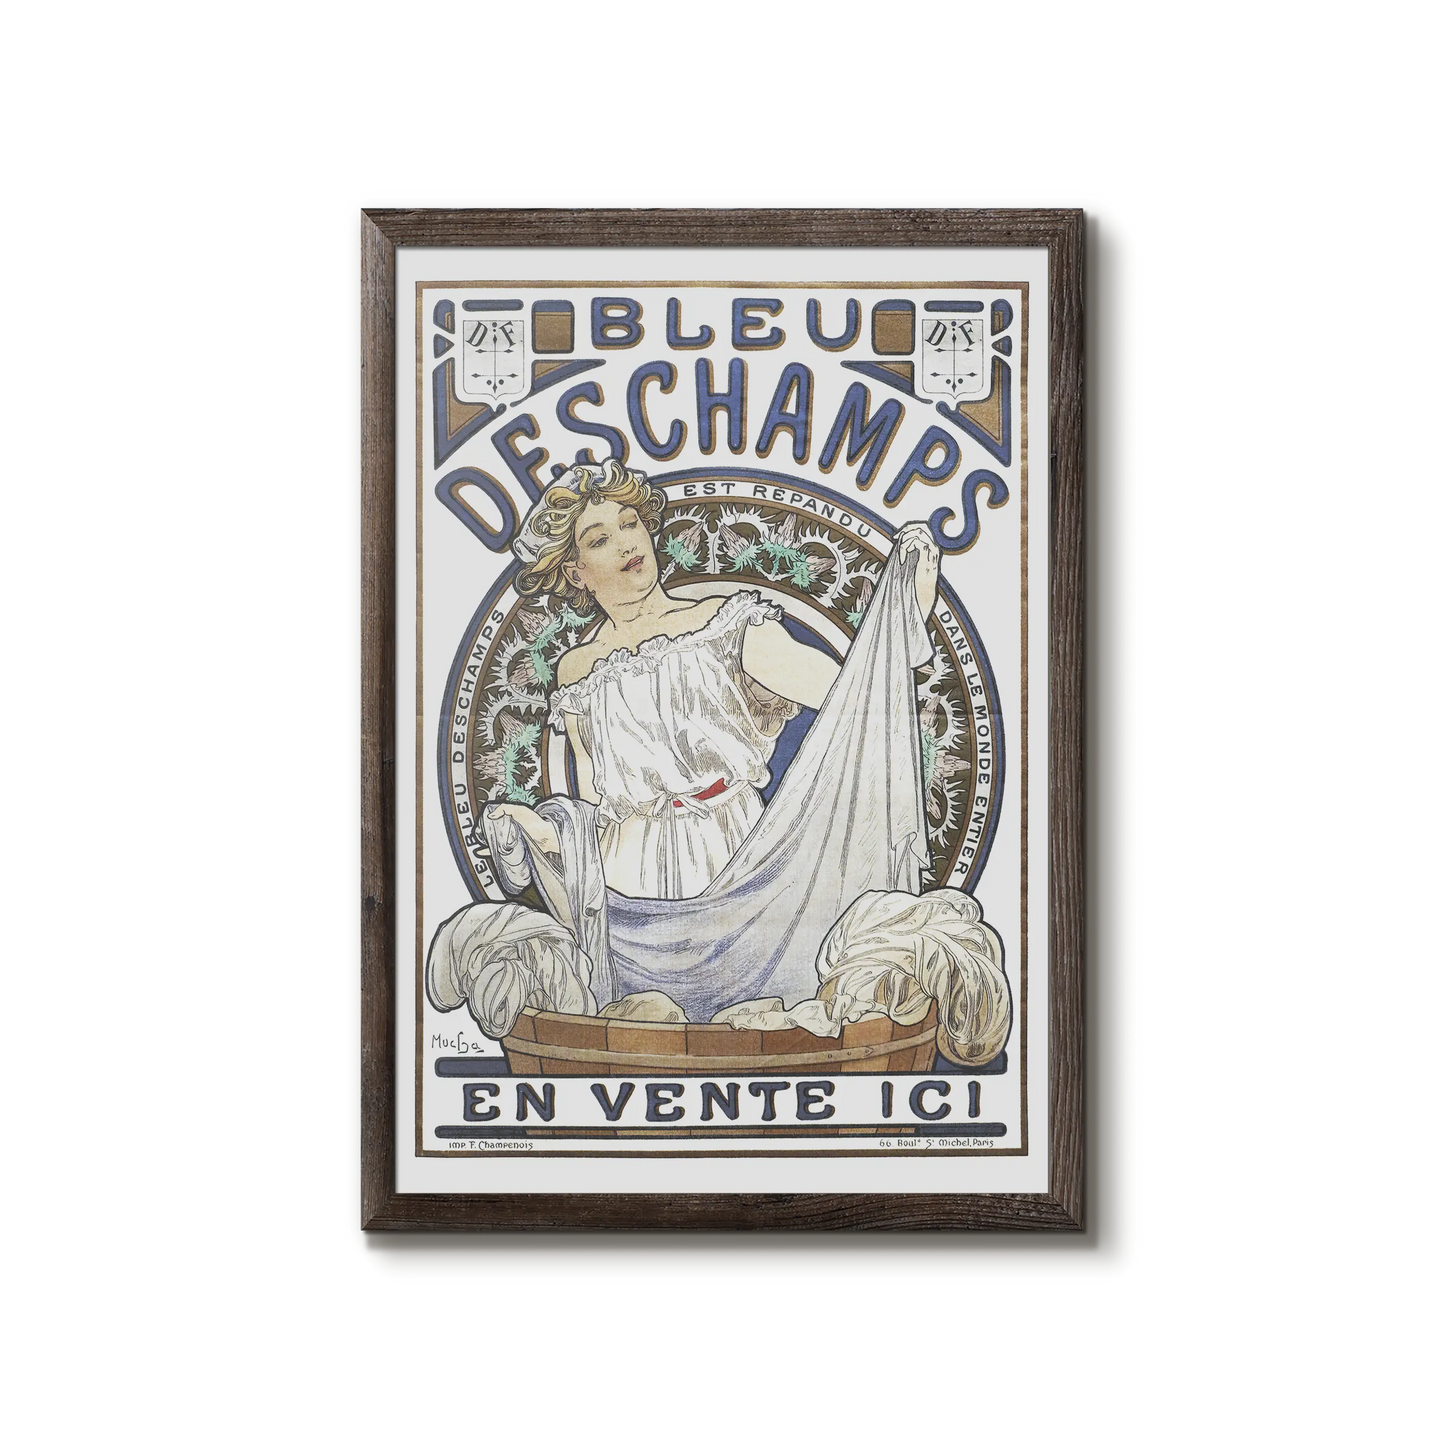 Bleu Deschamps 1897 - Alphonse Mucha poster